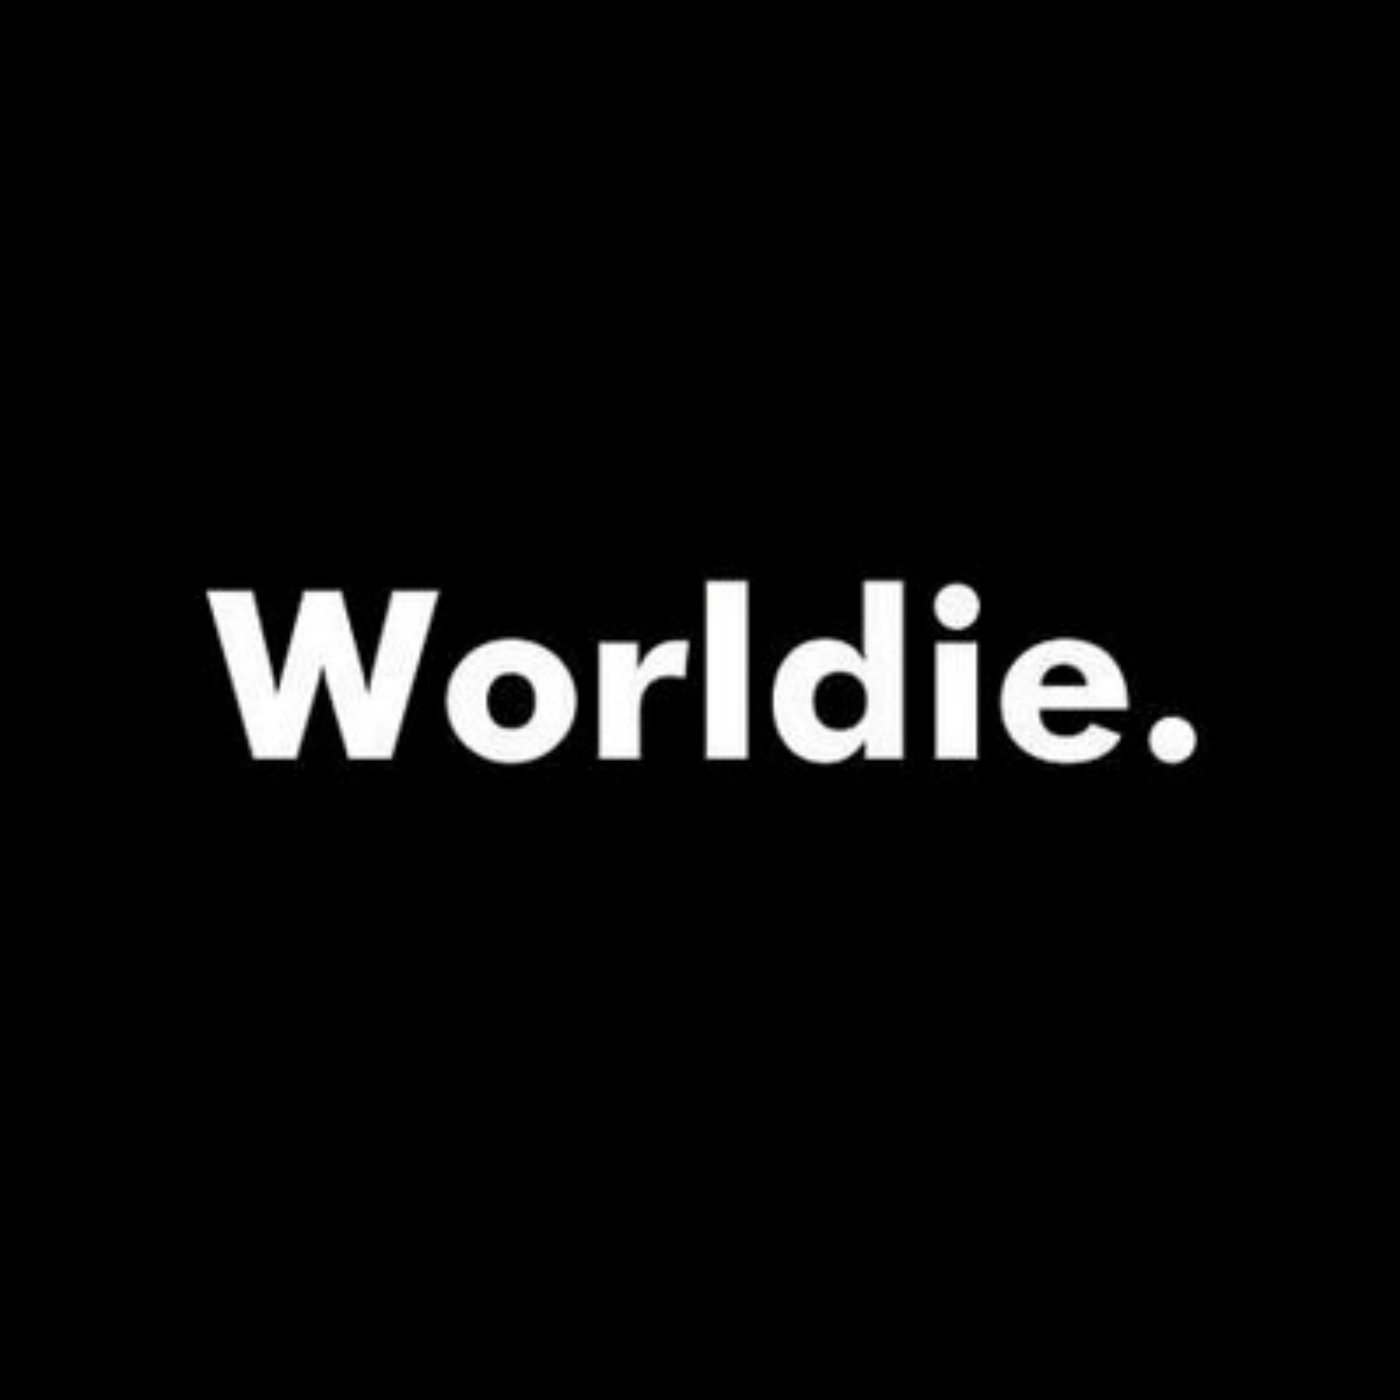 Absolute Worldie Episode 1 - 